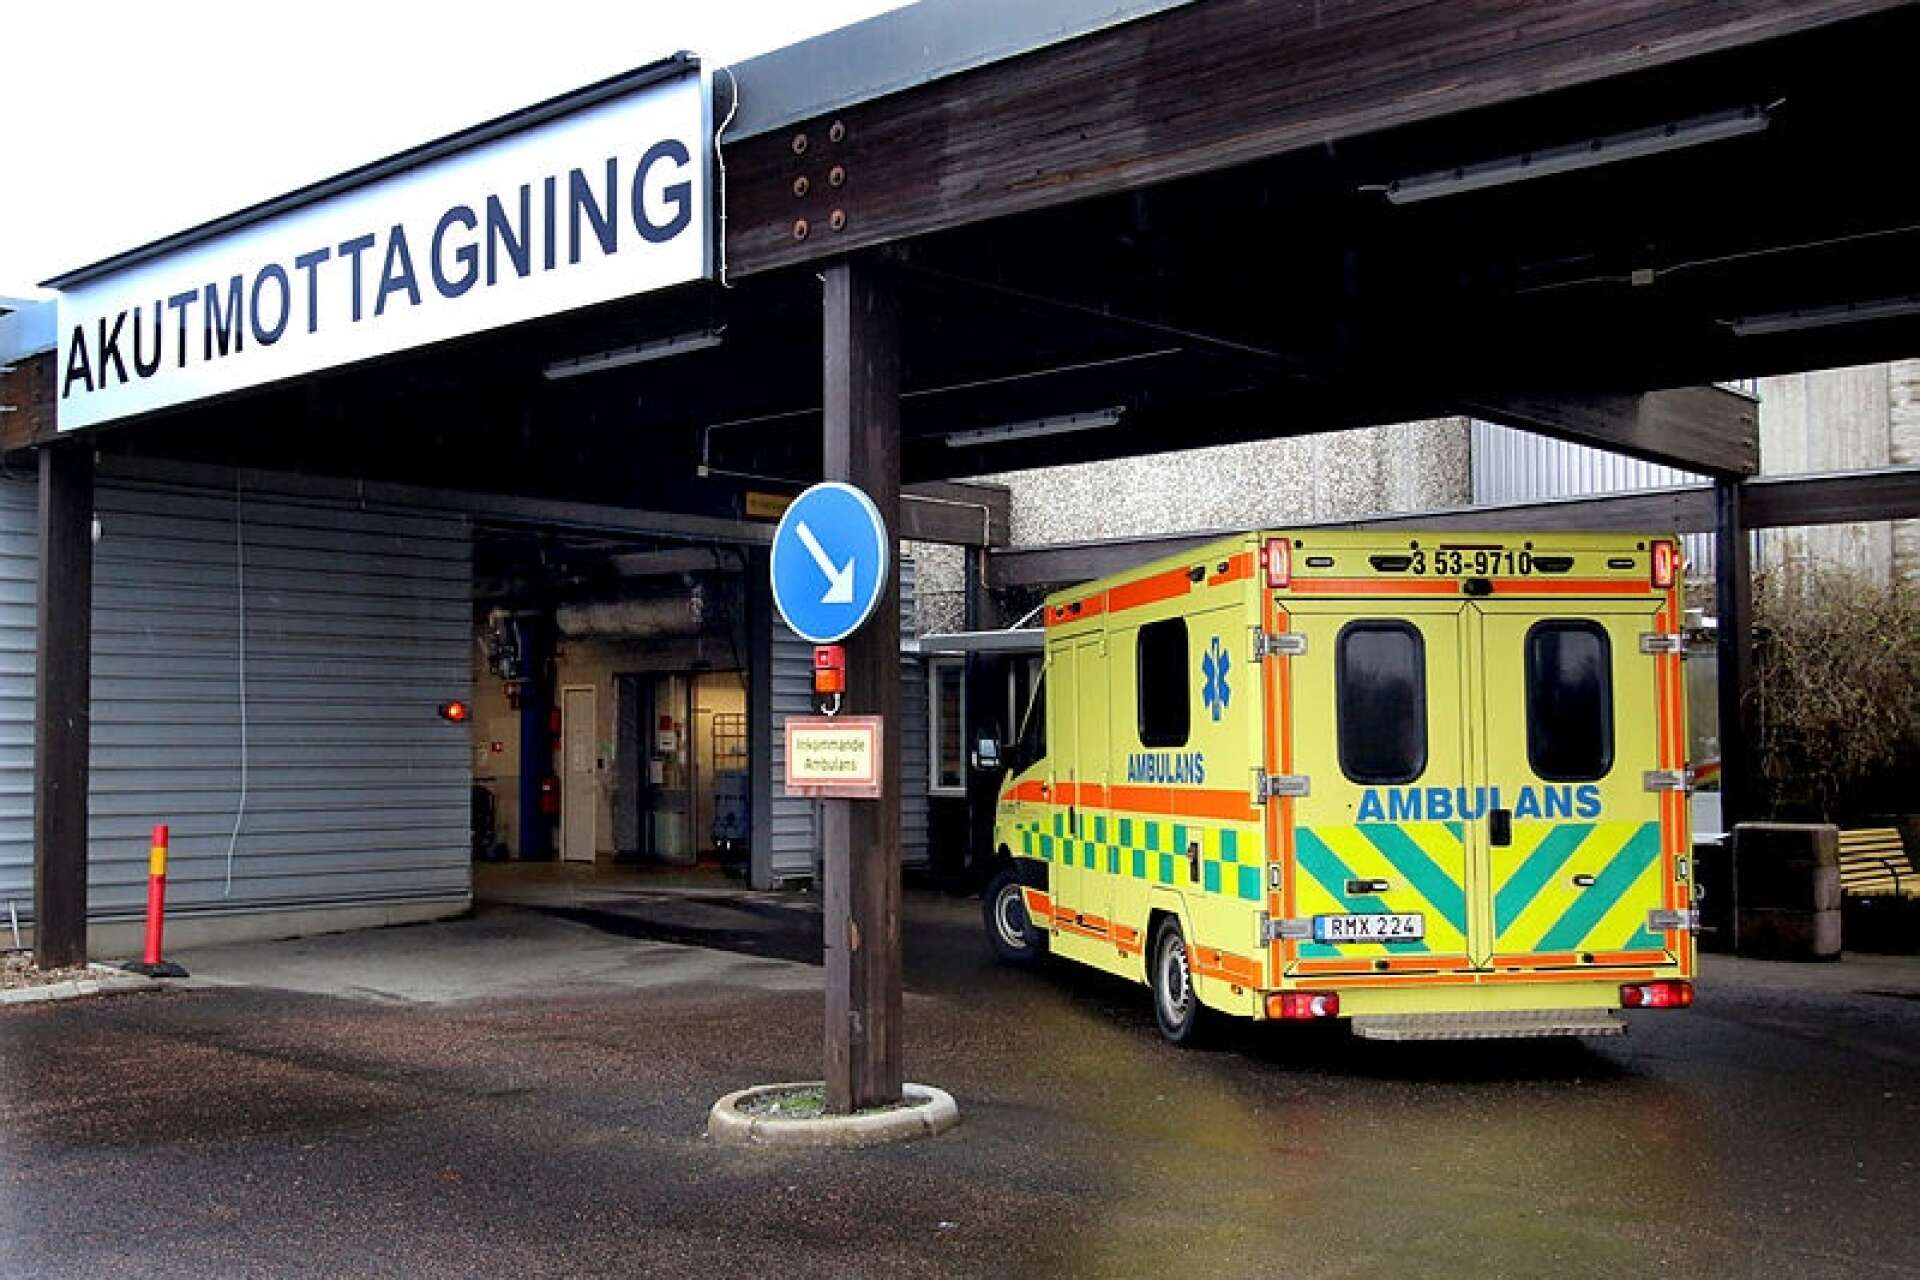 Skövdebon avled på Skaraborgs sjukhus i Skövde 2018 och polisen inledde en förundersökning om mord, som senare lades ned. Två år senare öppnades den igen, men den kvinna som varit misstänkt i fallet har nu avförts från utredningen.